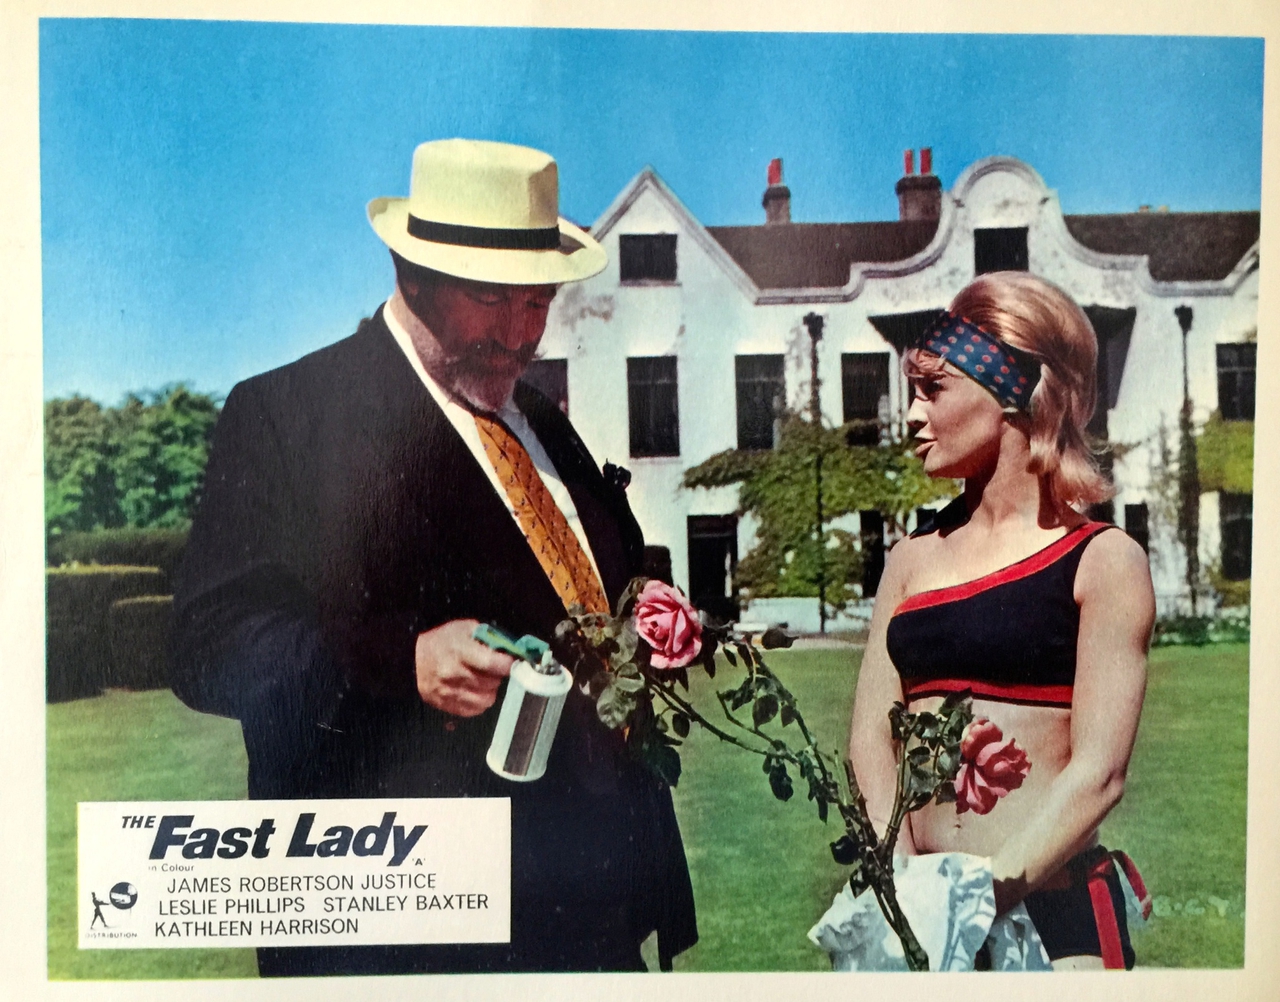  فیلم سینمایی The Fast Lady با حضور جولی کریستی و James Robertson Justice